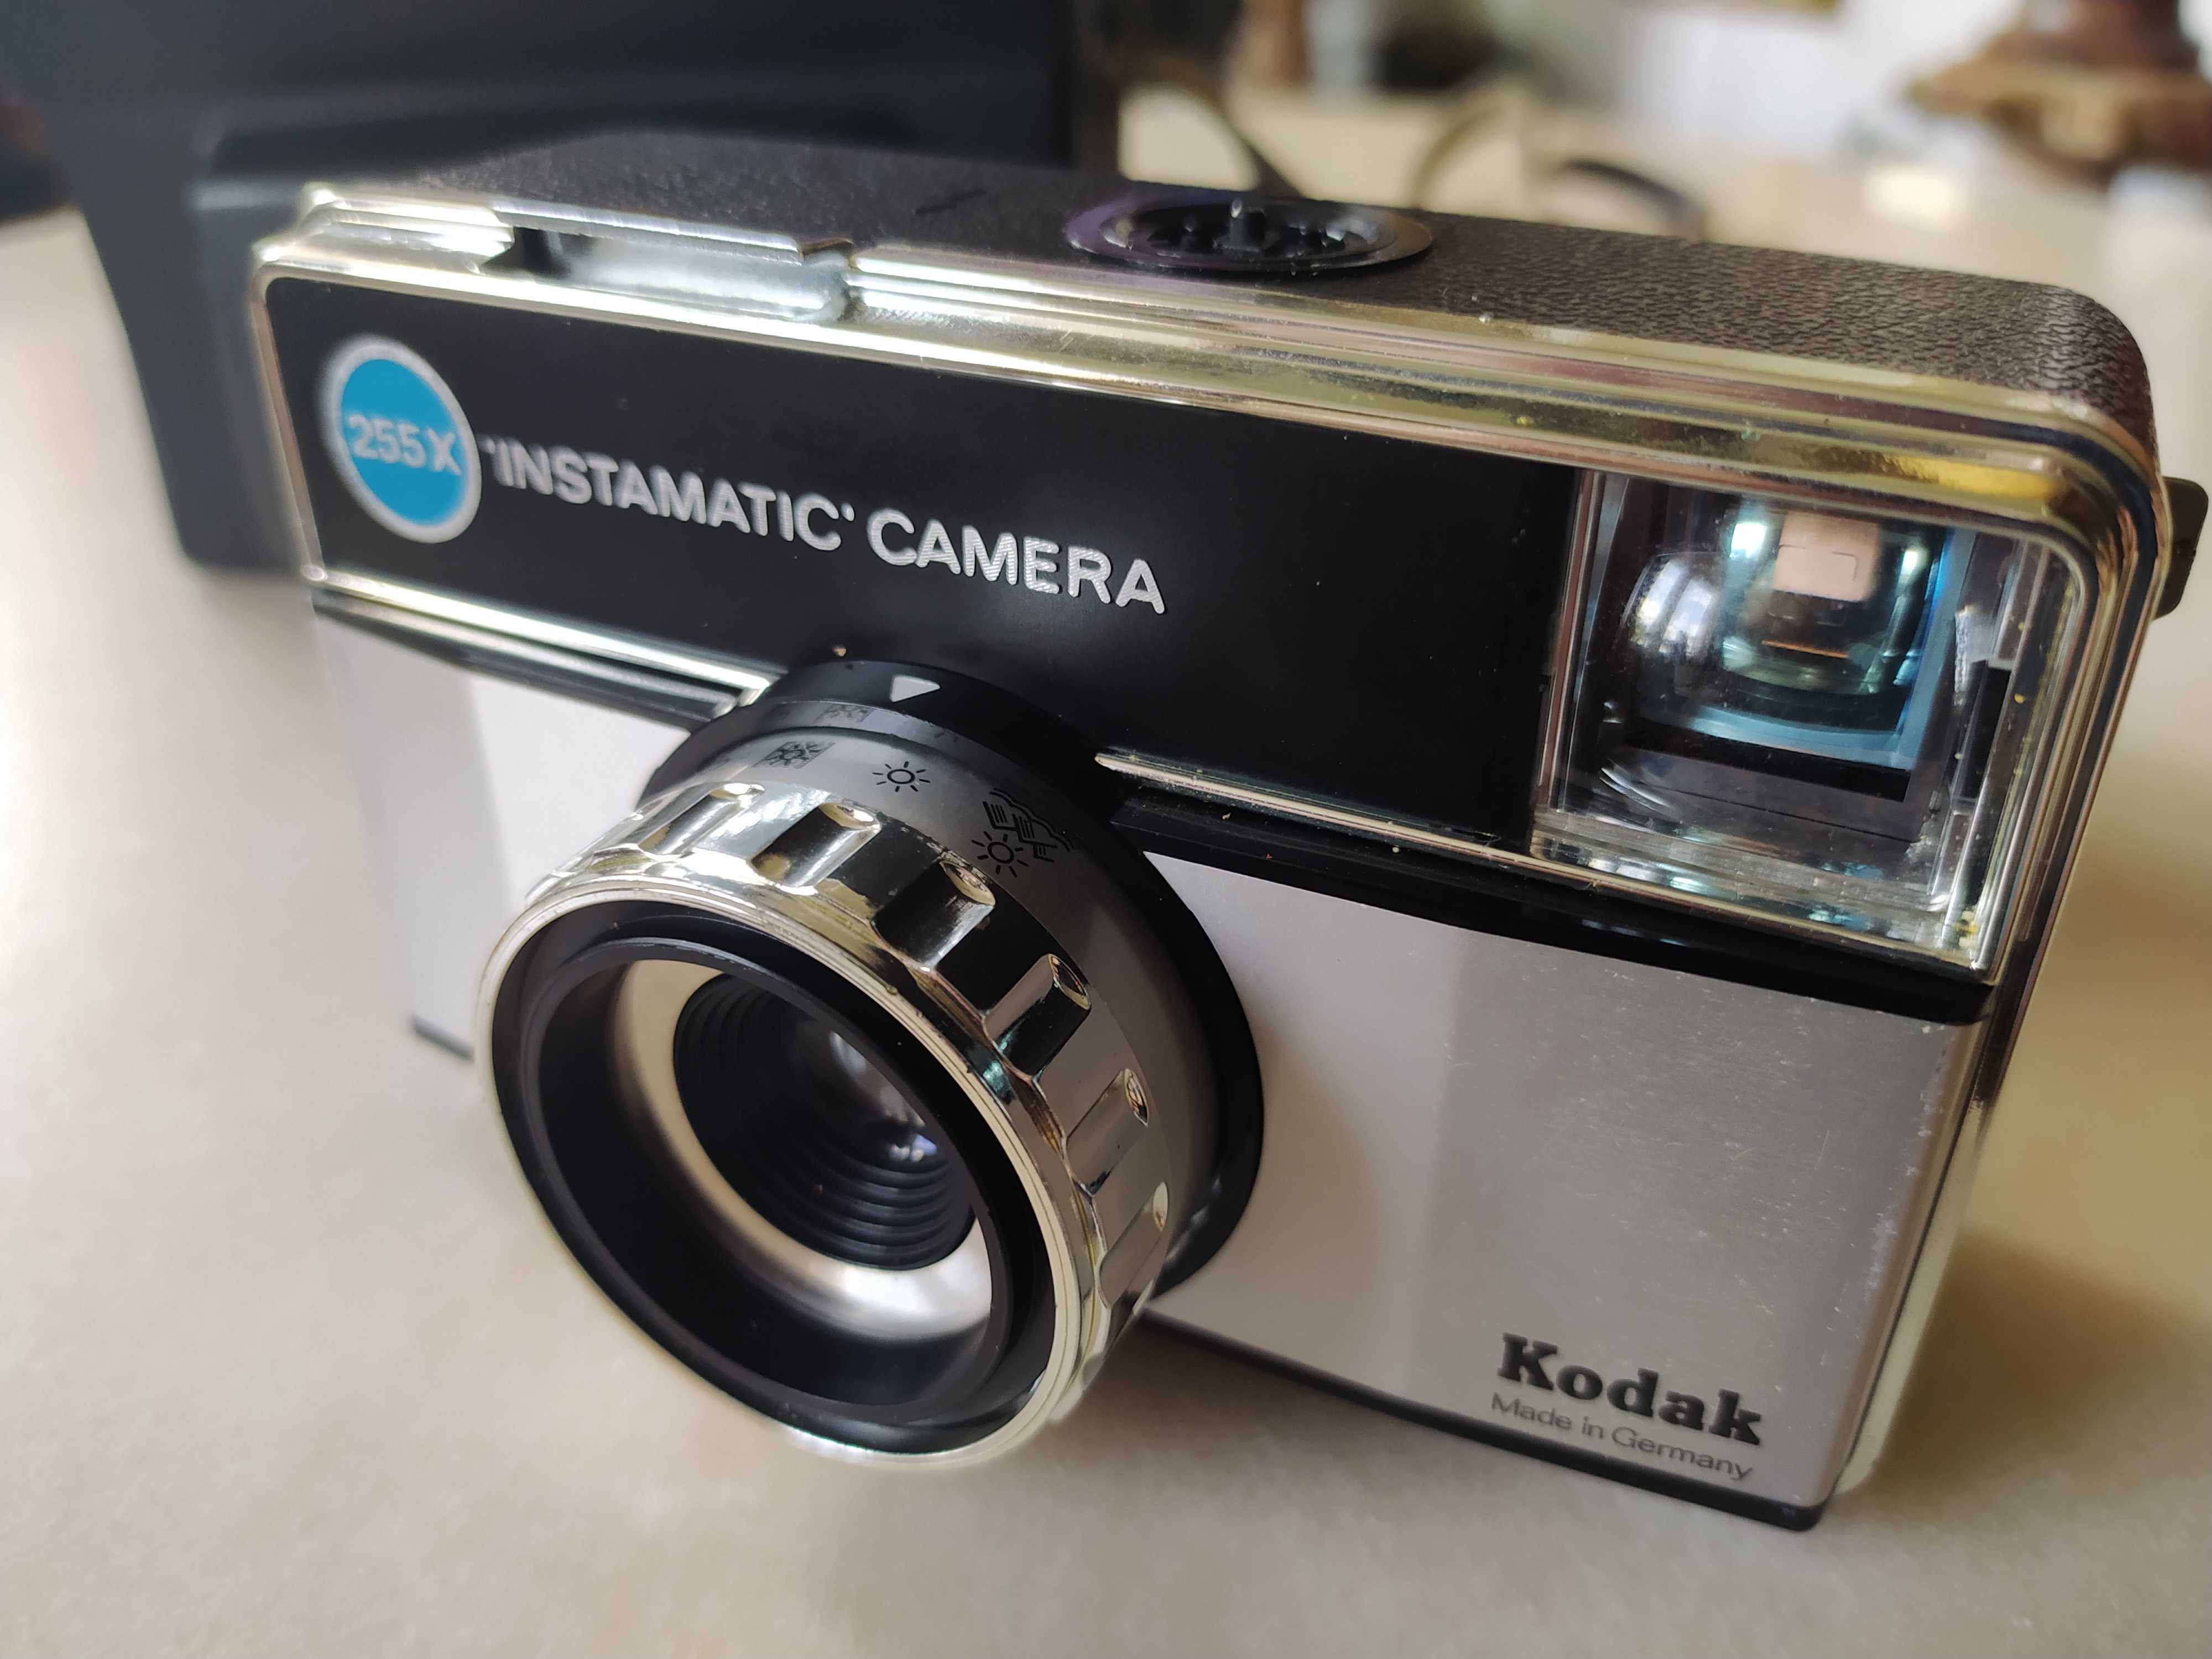 Aparat Kodak 255X Instamatic Camera